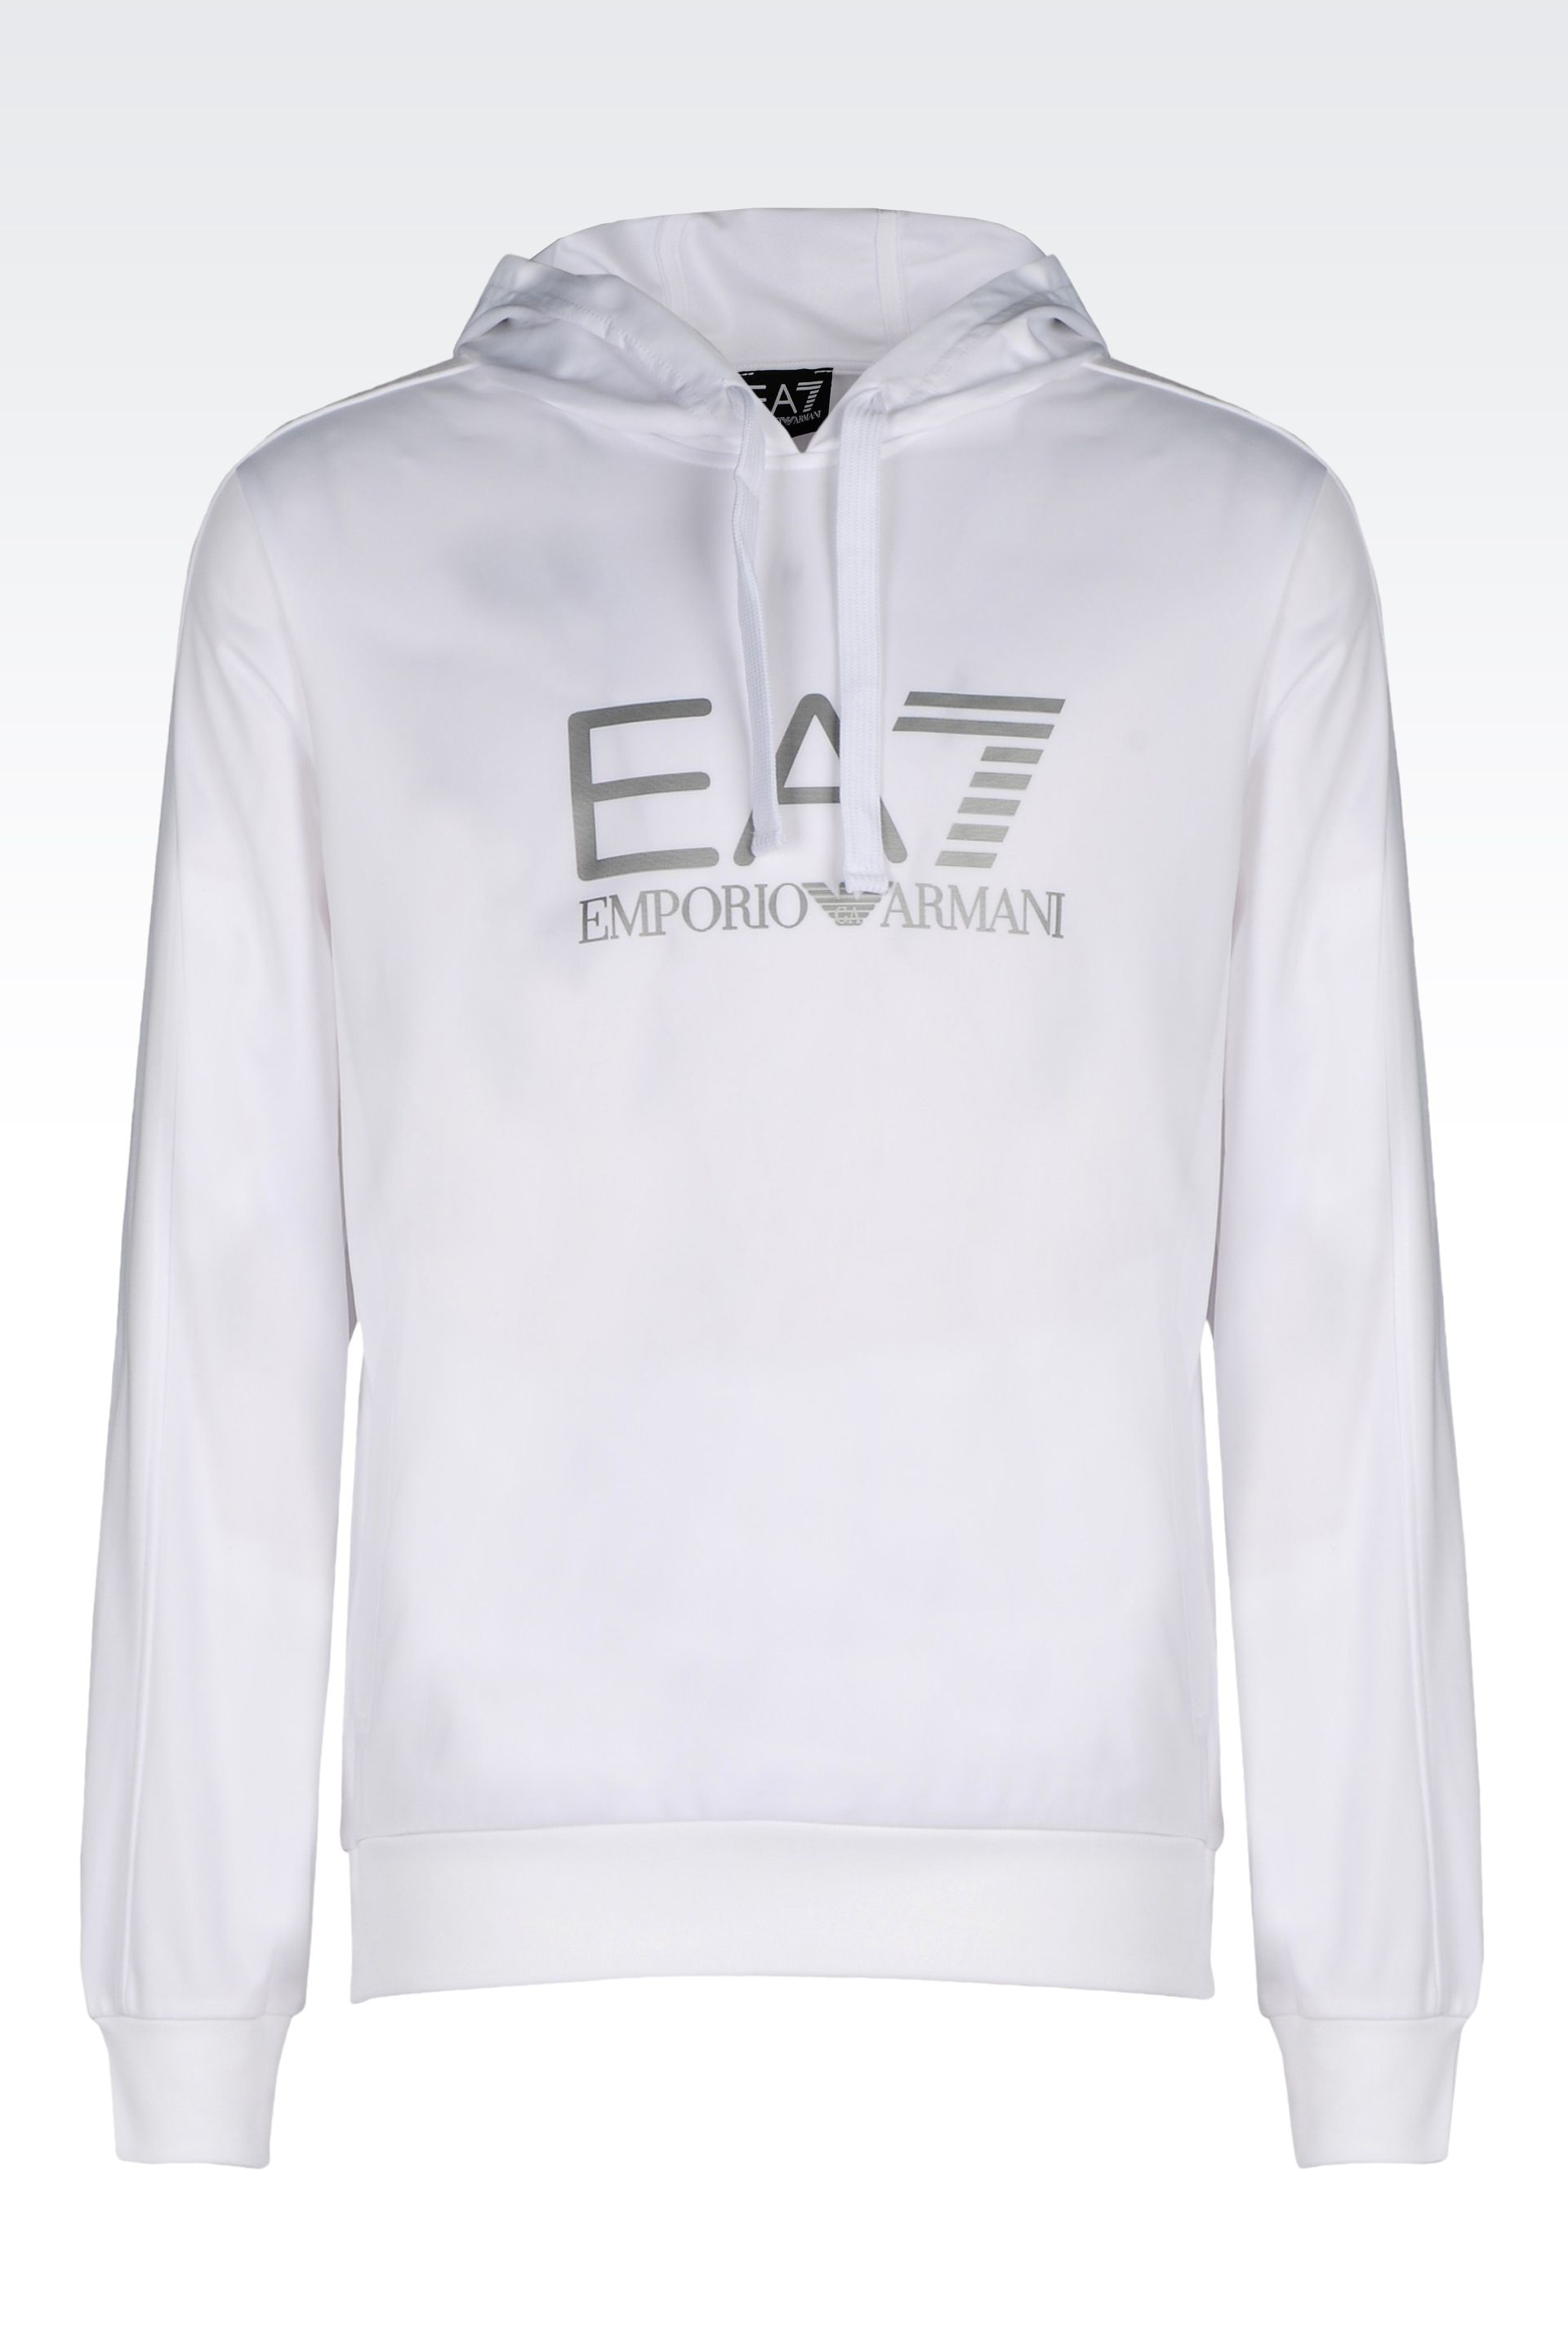 ea7 white sweatshirt